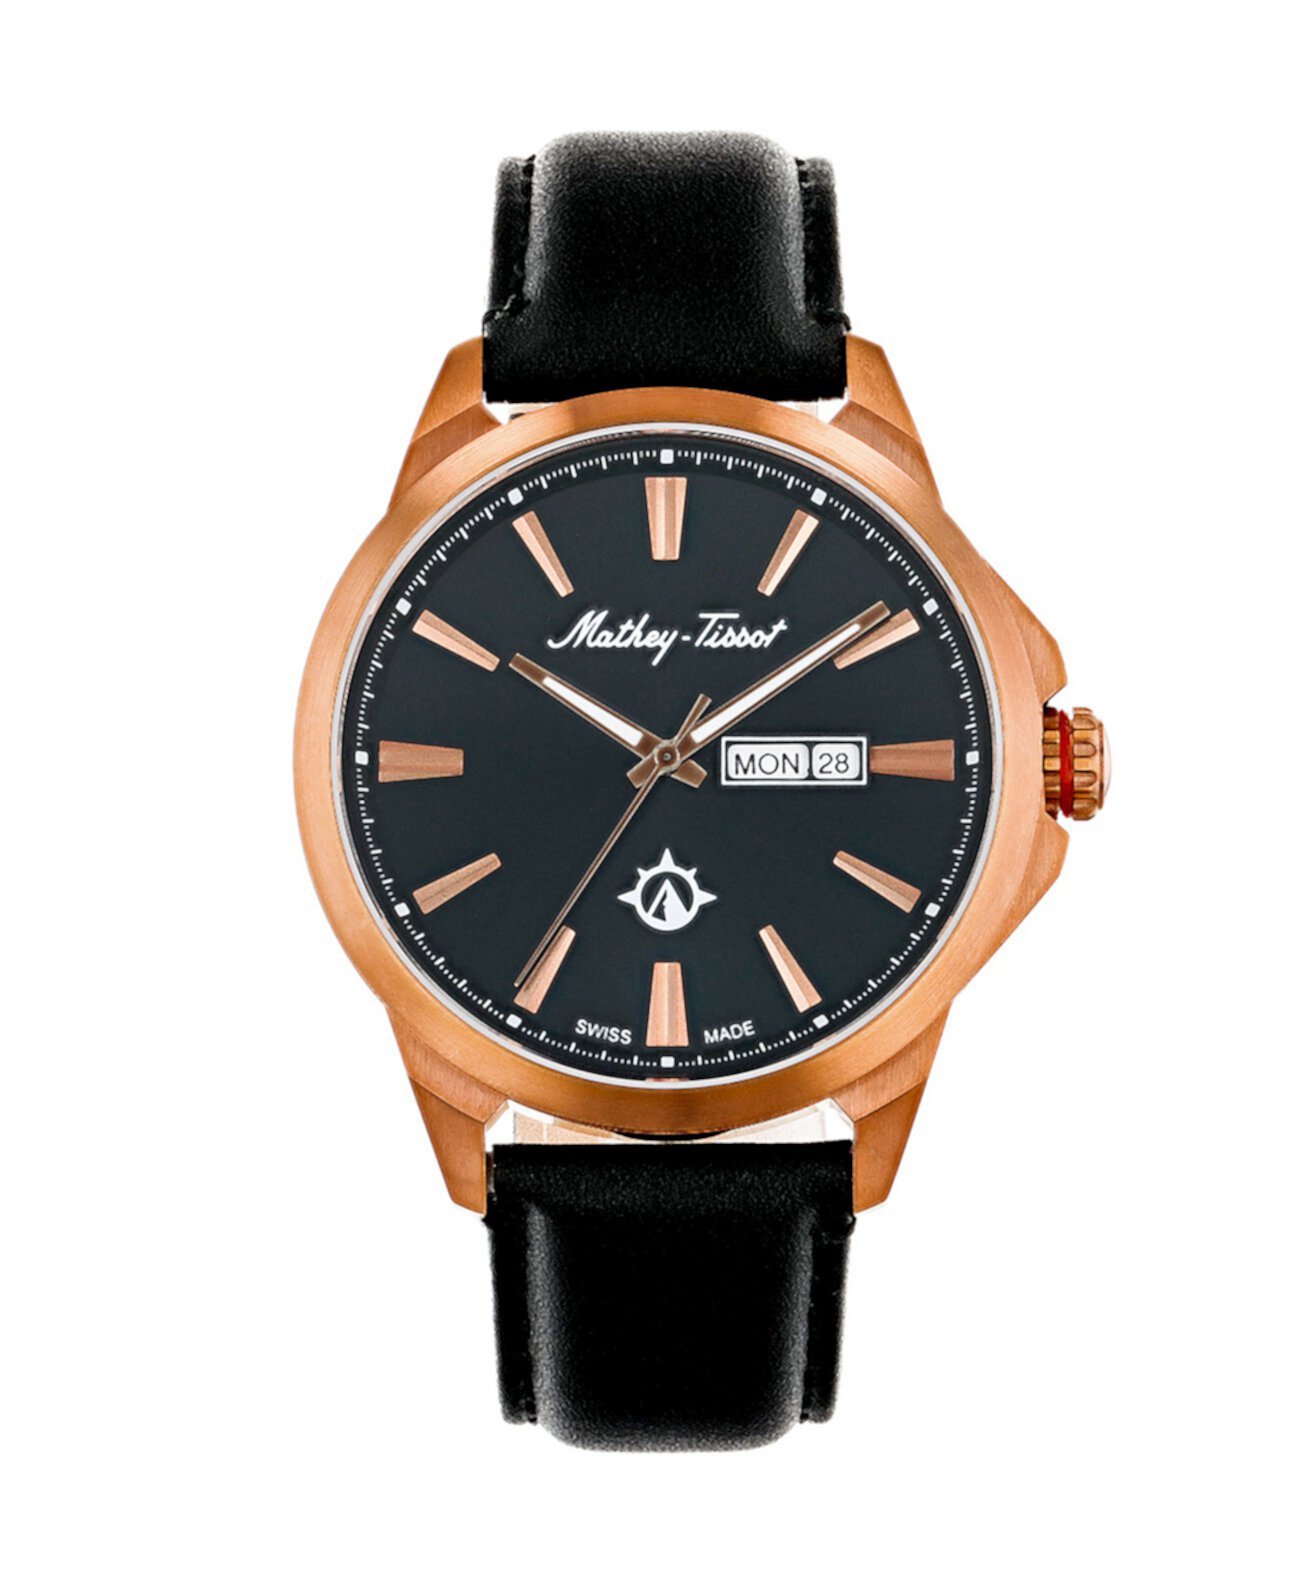 Мужские часы Field Scout Collection Классические черные часы с ремешком из натуральной кожи, 45 мм Mathey-Tissot